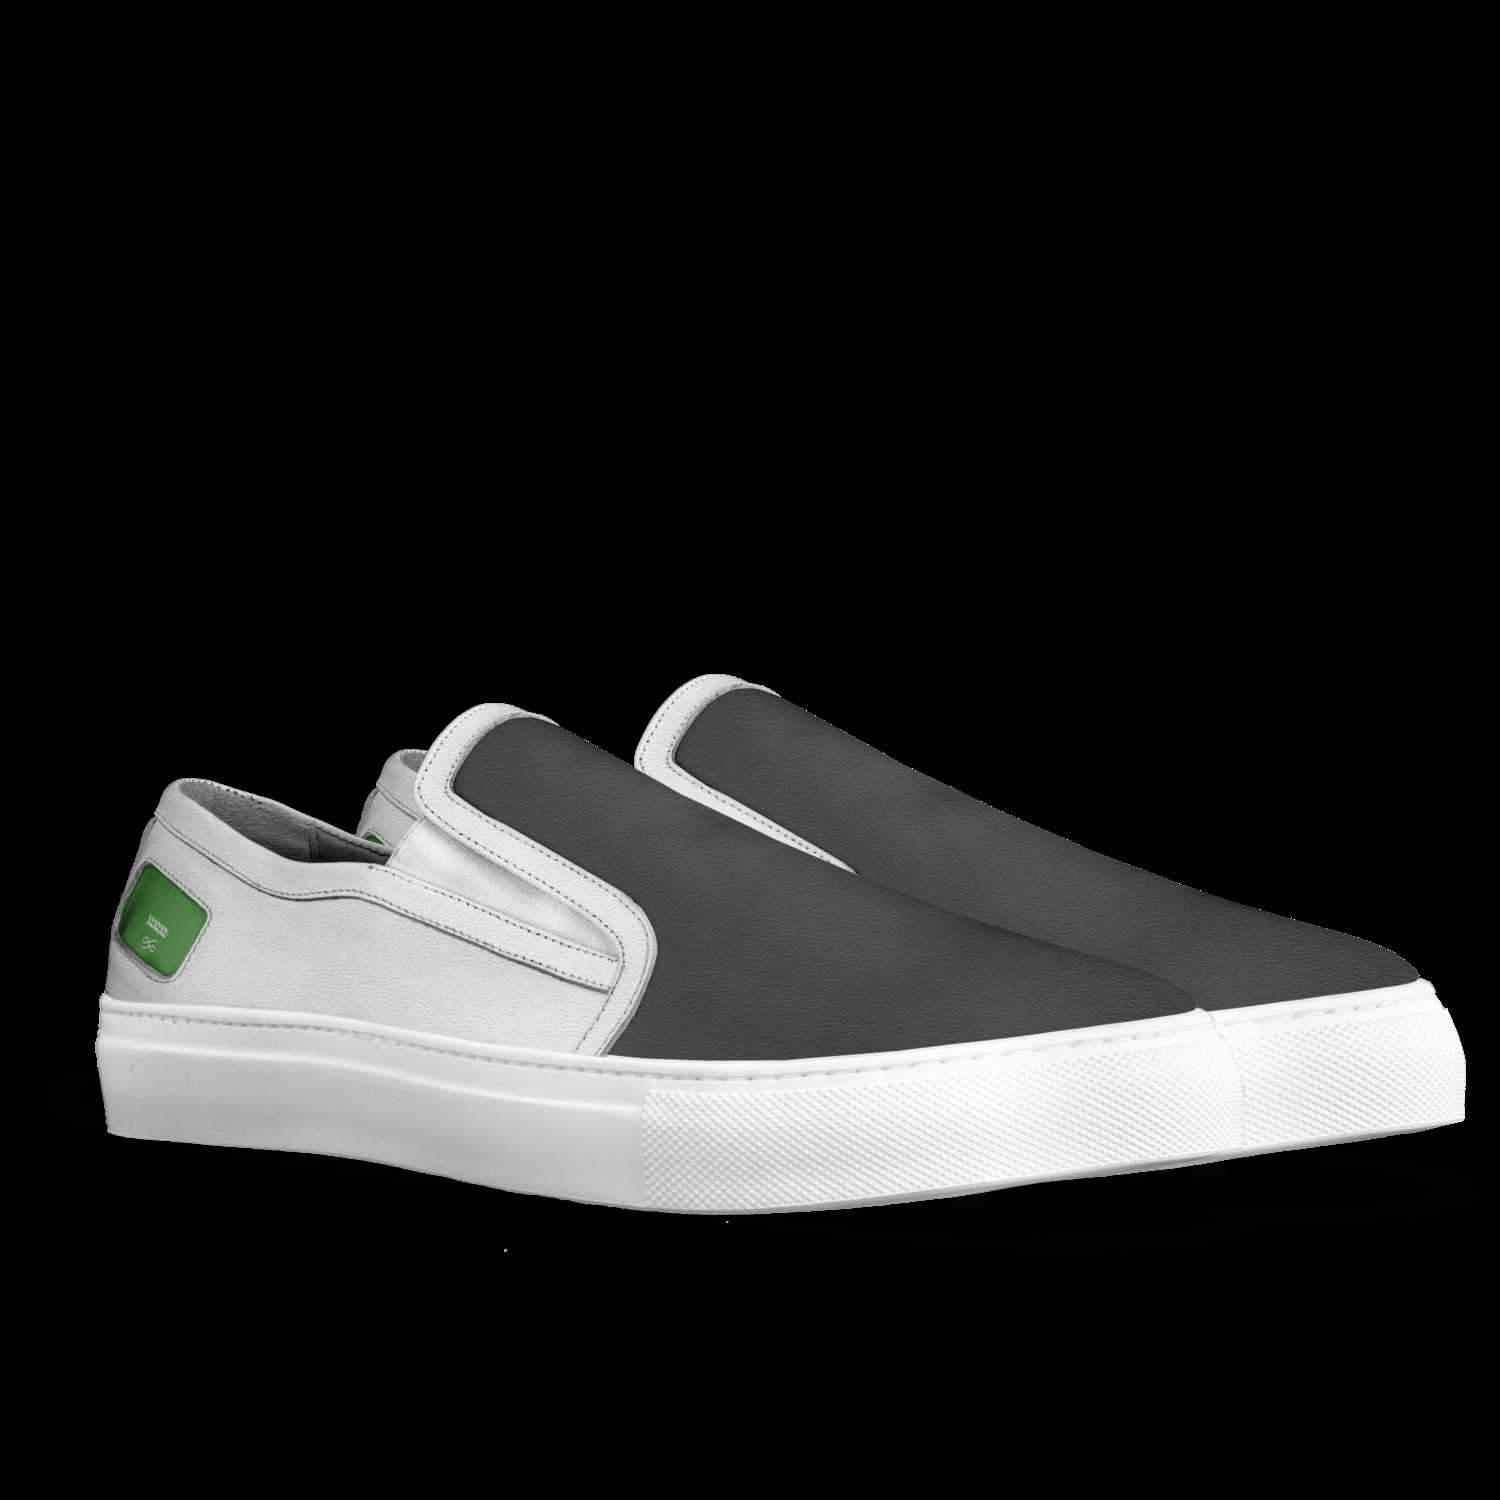 xzxzxz | A Custom Shoe concept by Wwwwww